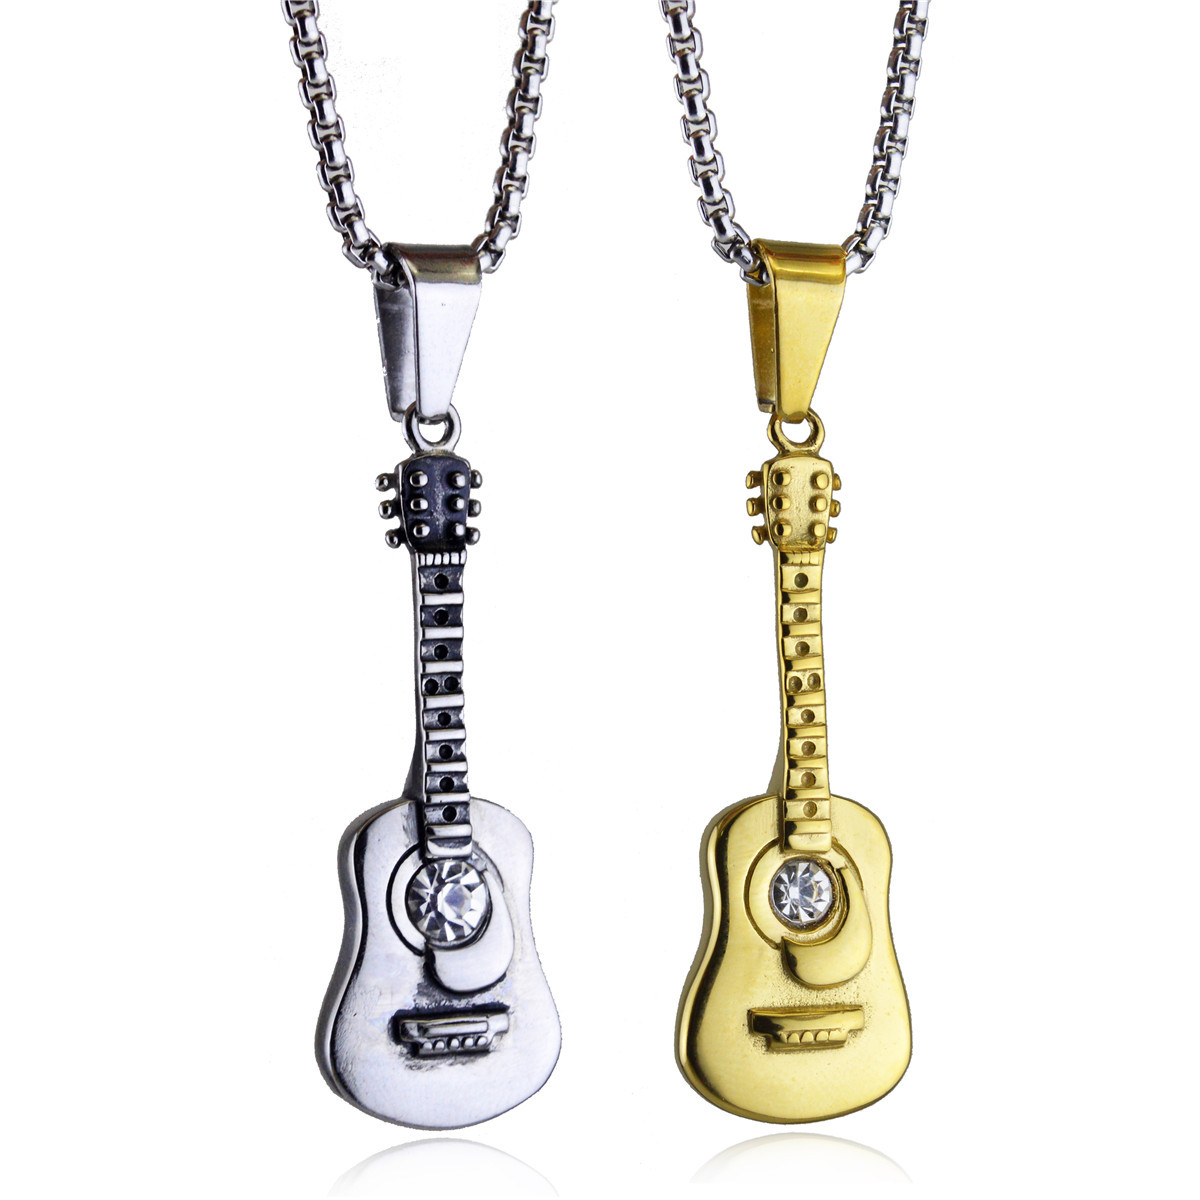 2色 ステンレス ギターネックレス  おしゃれな楽器ネックレス  メンズネックレス   楽器 音楽アクセサリー